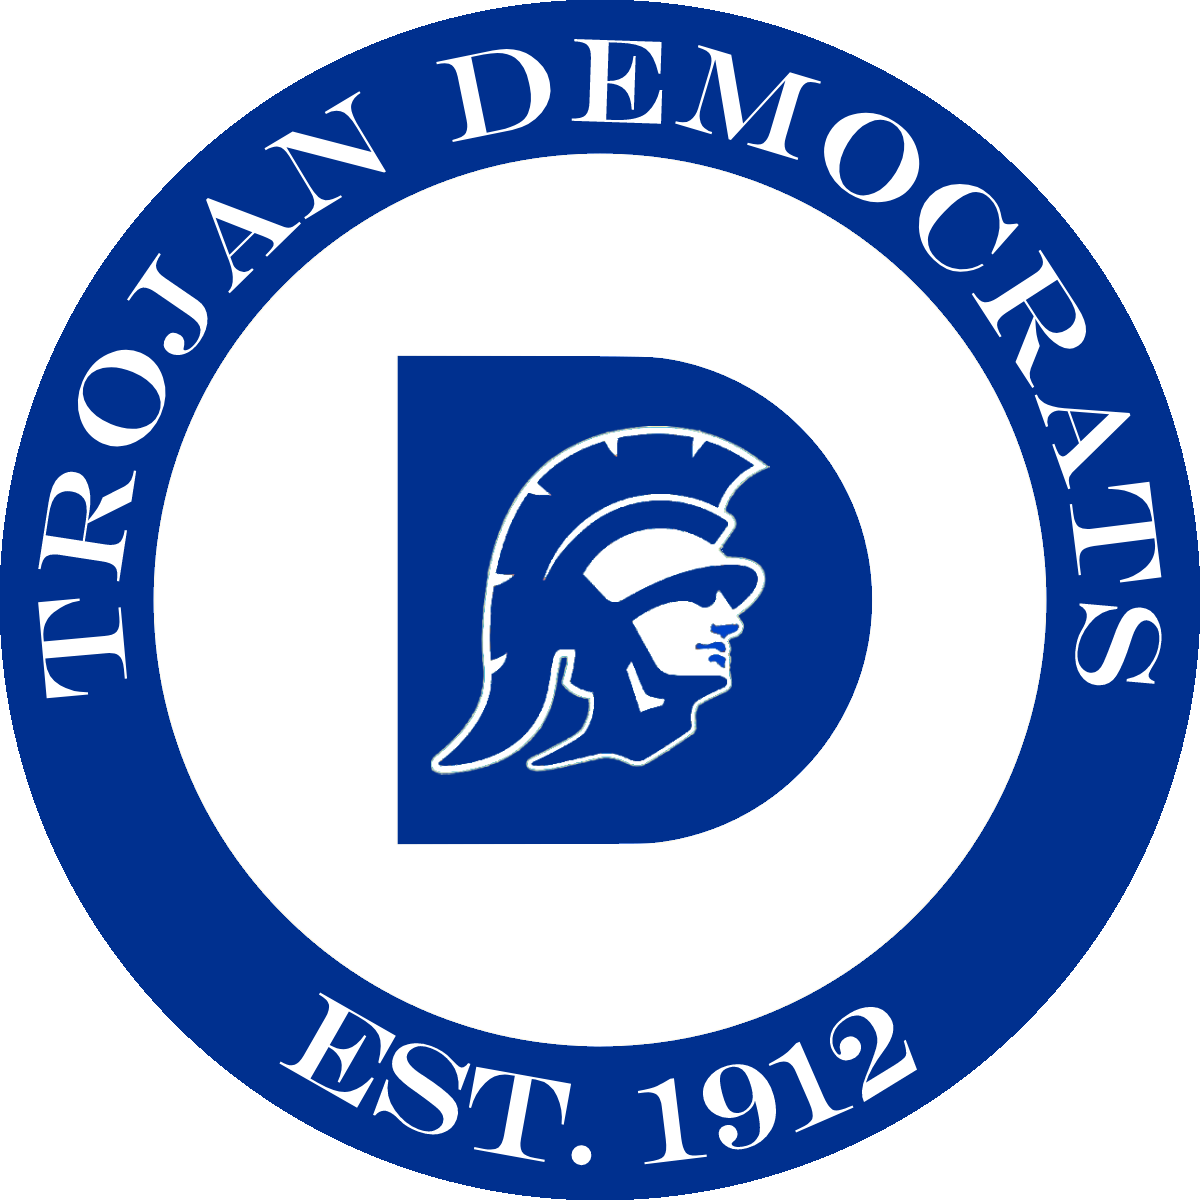 Trojan Democrats